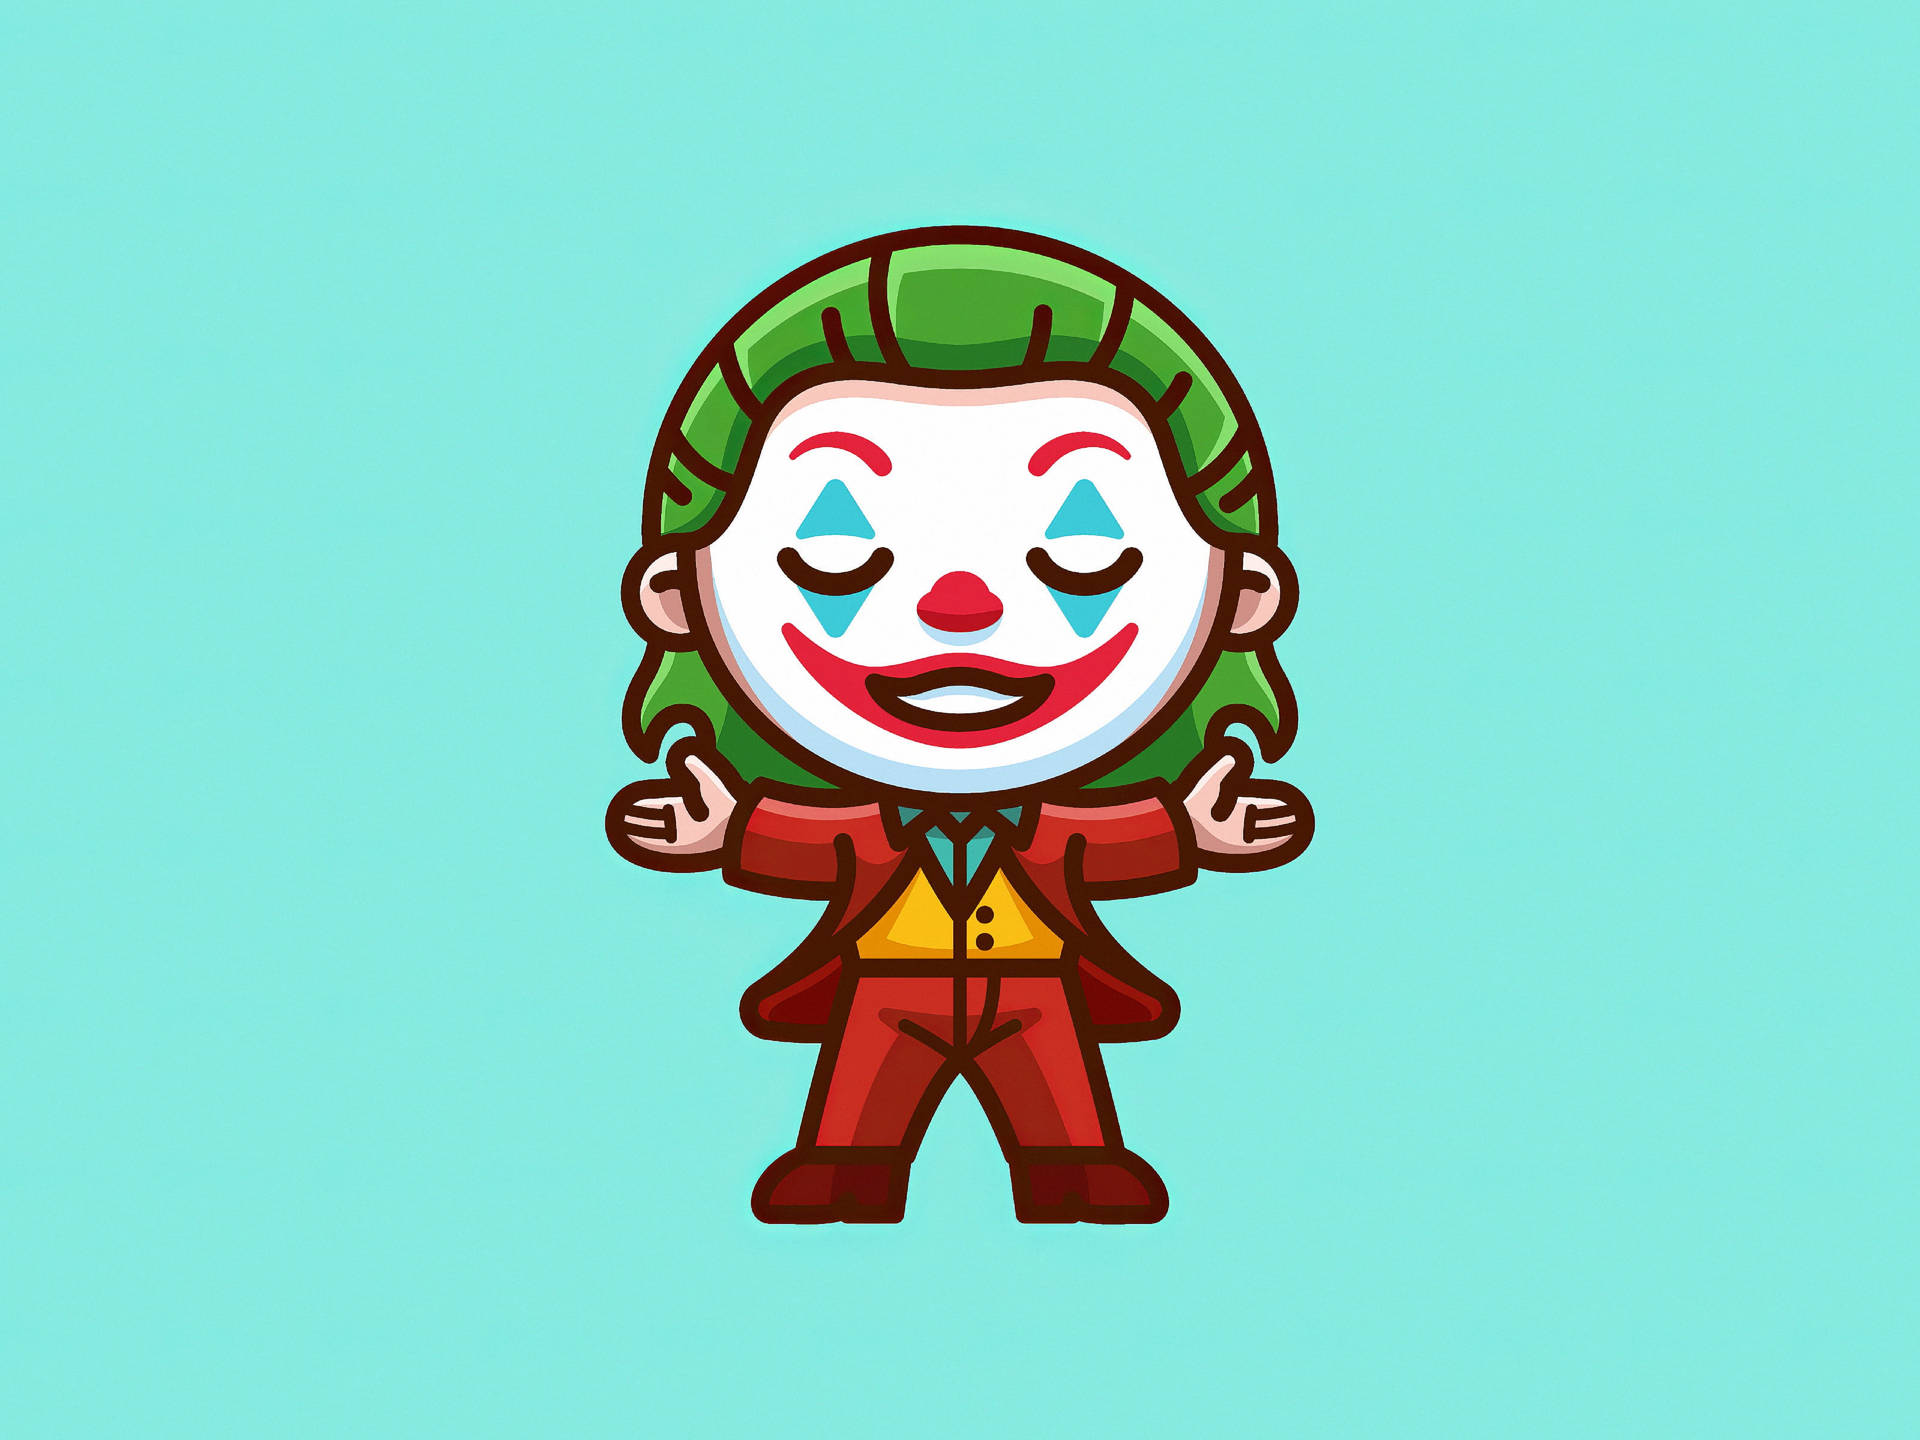 Joker 2019 Cute Cartoon Background